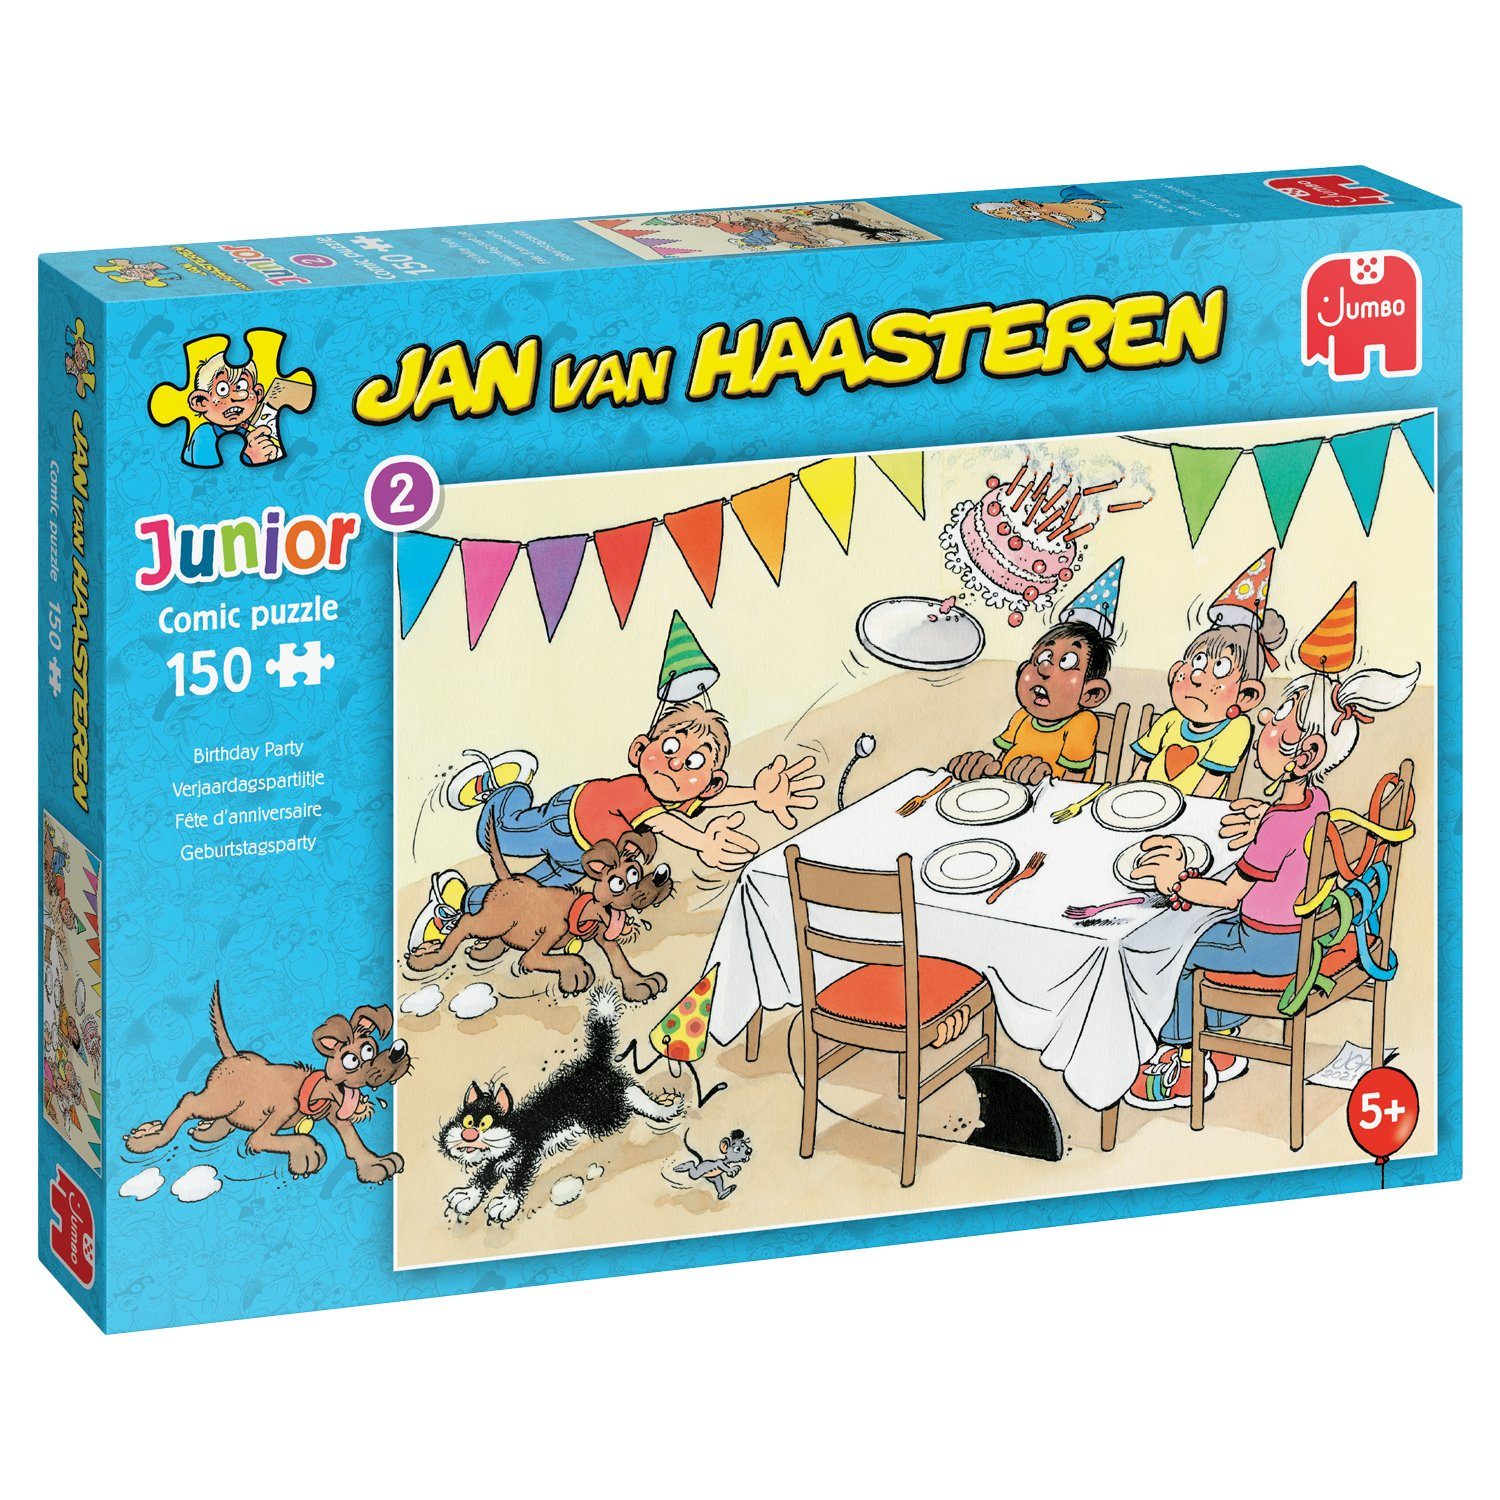 Jumbo Spiele Puzzle Jan van Haasteren Junior 2 Geburtstagsparty, 150 Puzzleteile